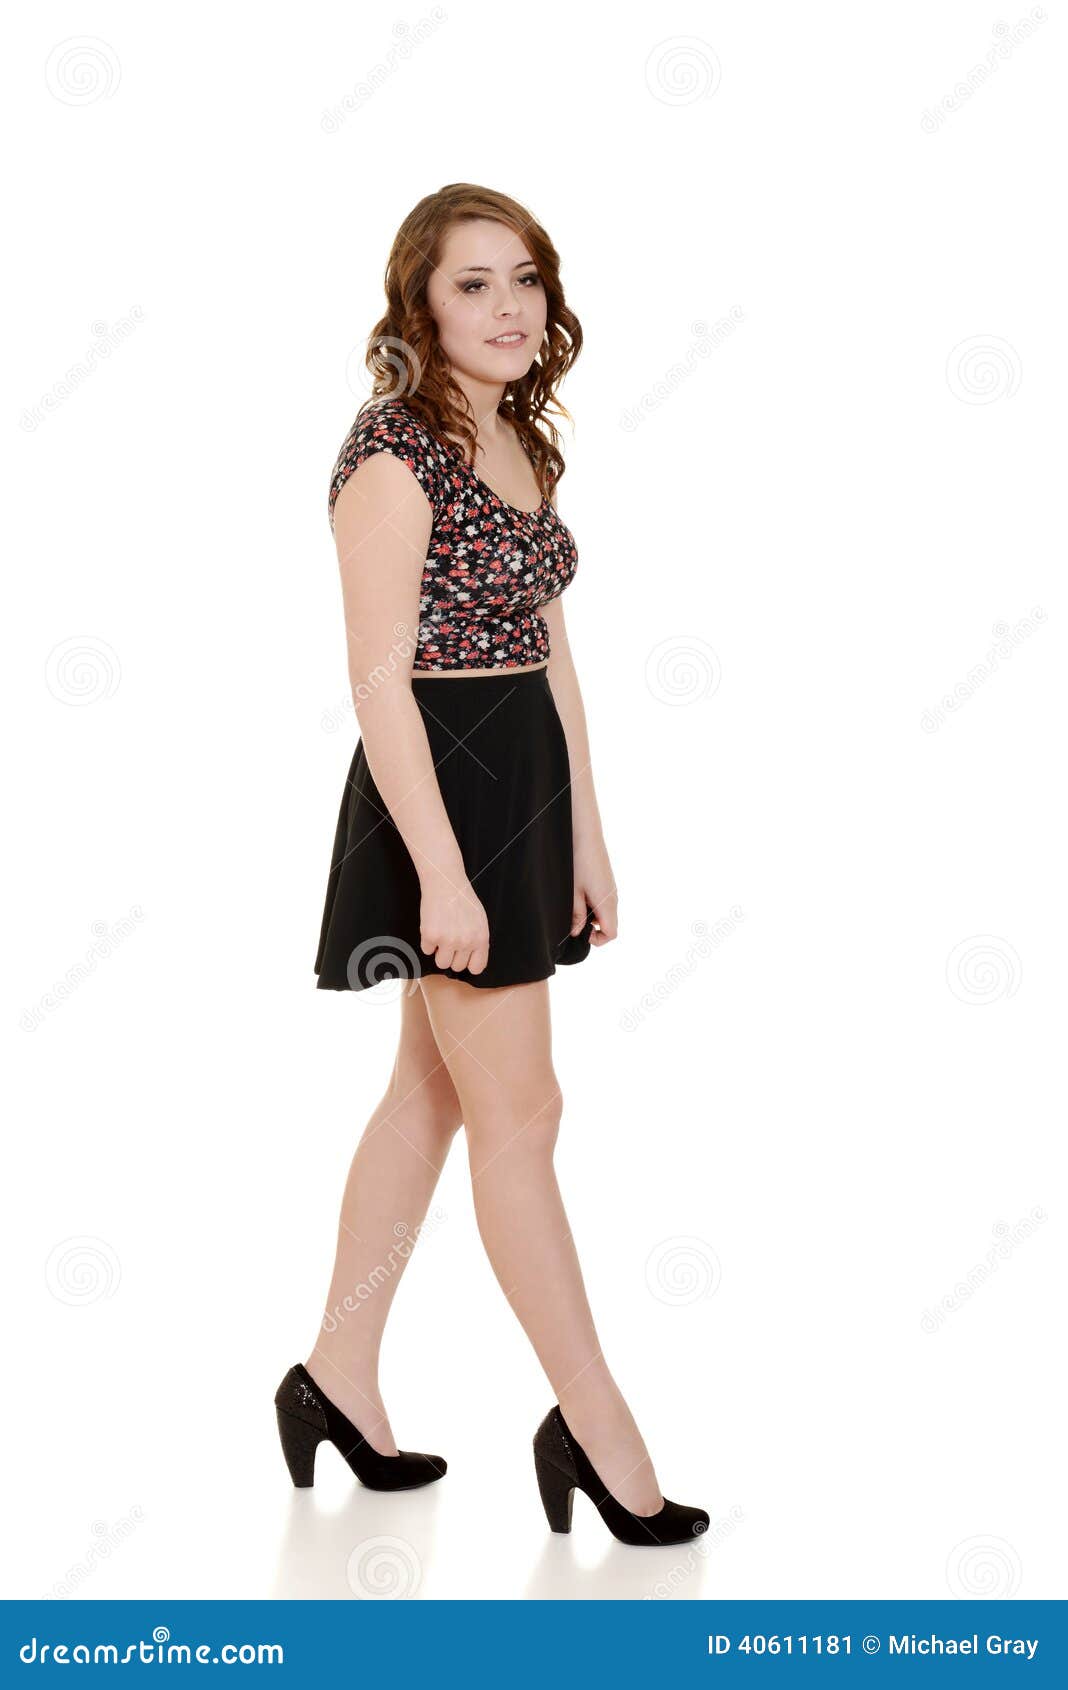 derek hole add teens in short skirts photo